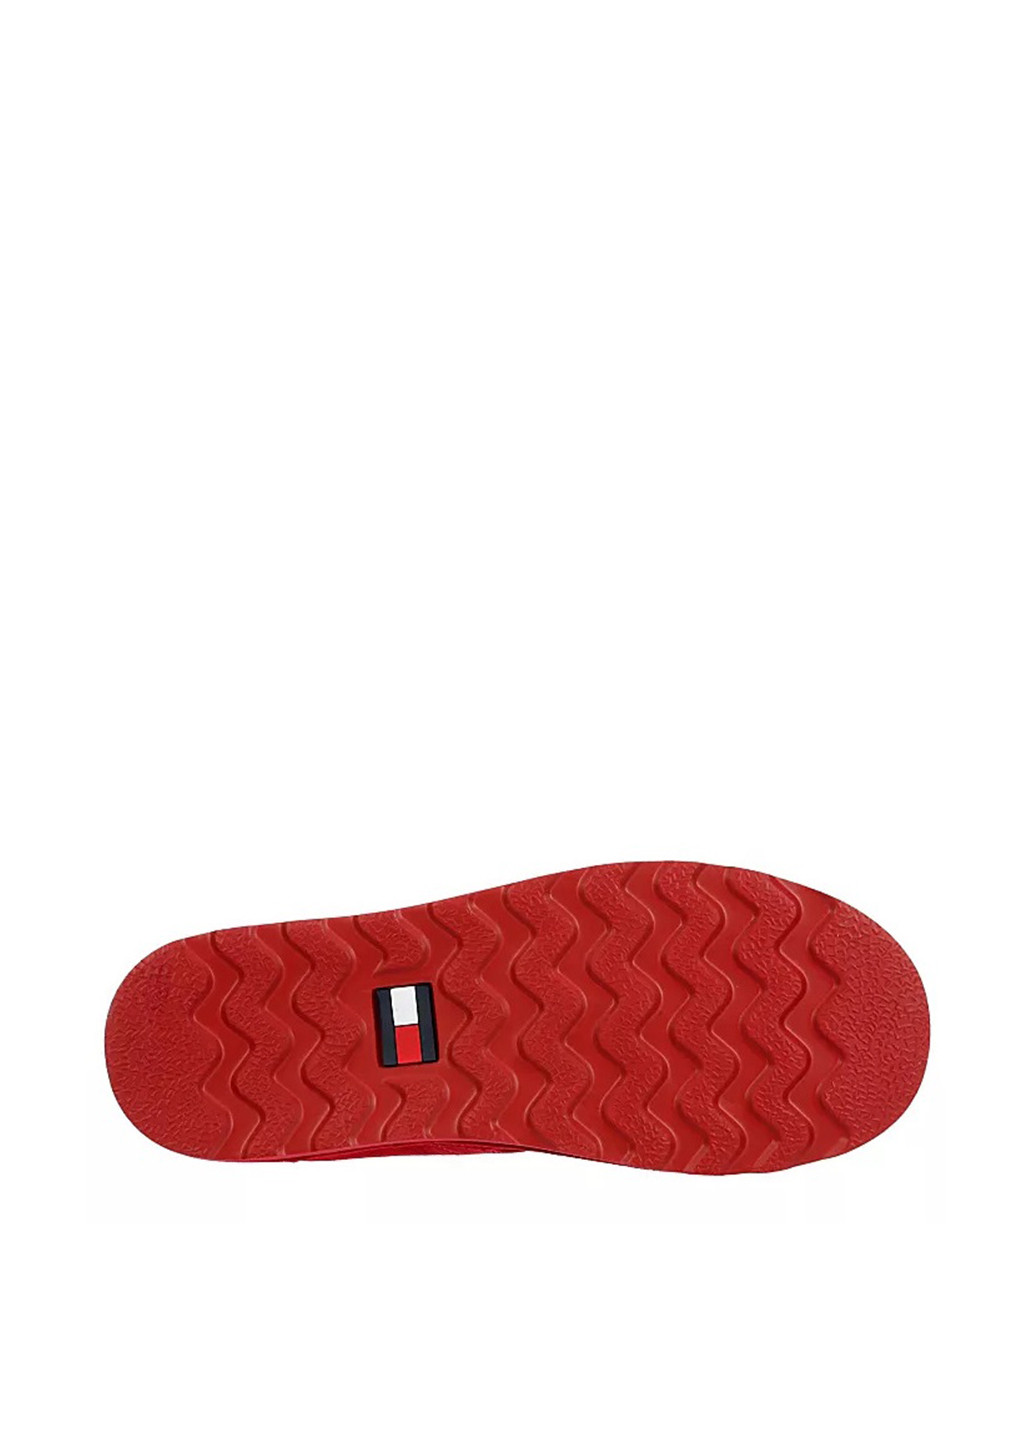 Красные осенние ботинки Tommy Hilfiger